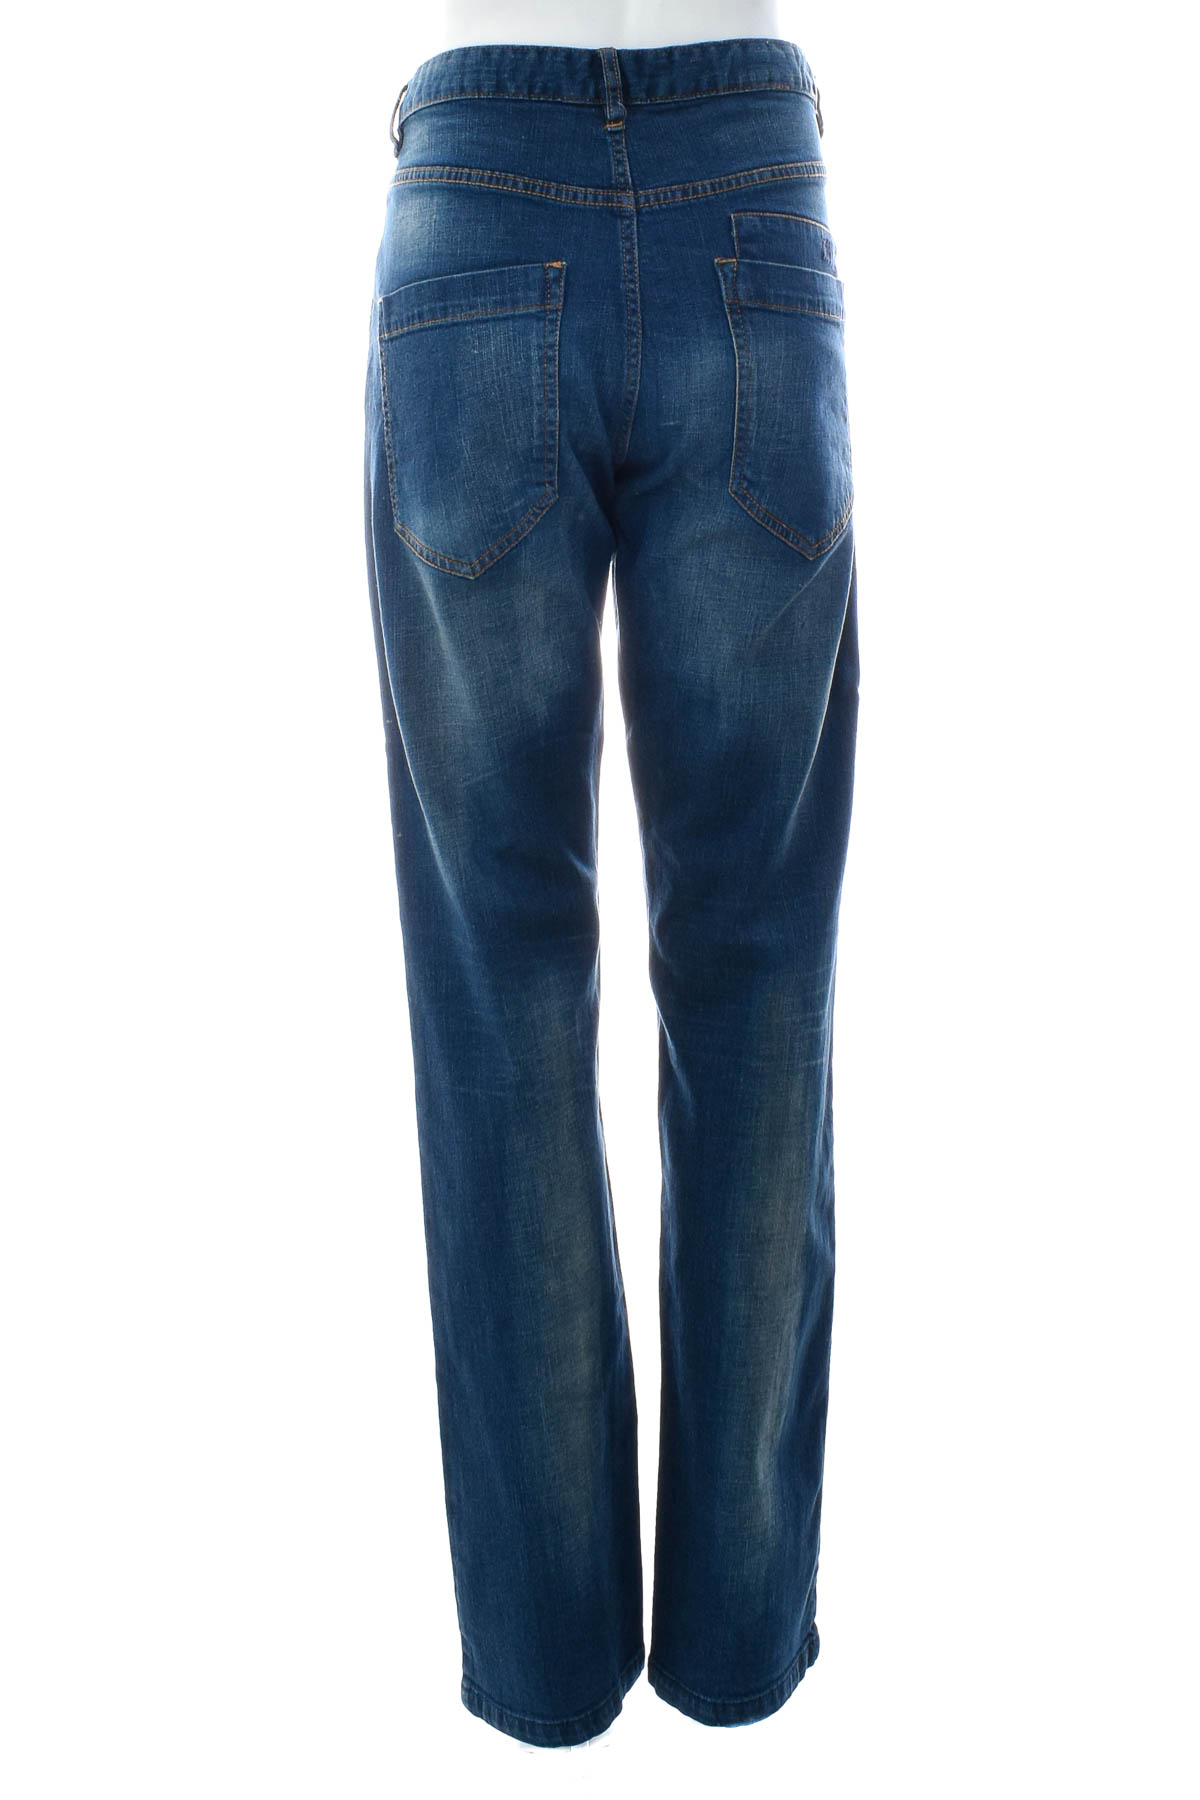 Jeans pentru bărbăți - Urban division - 1